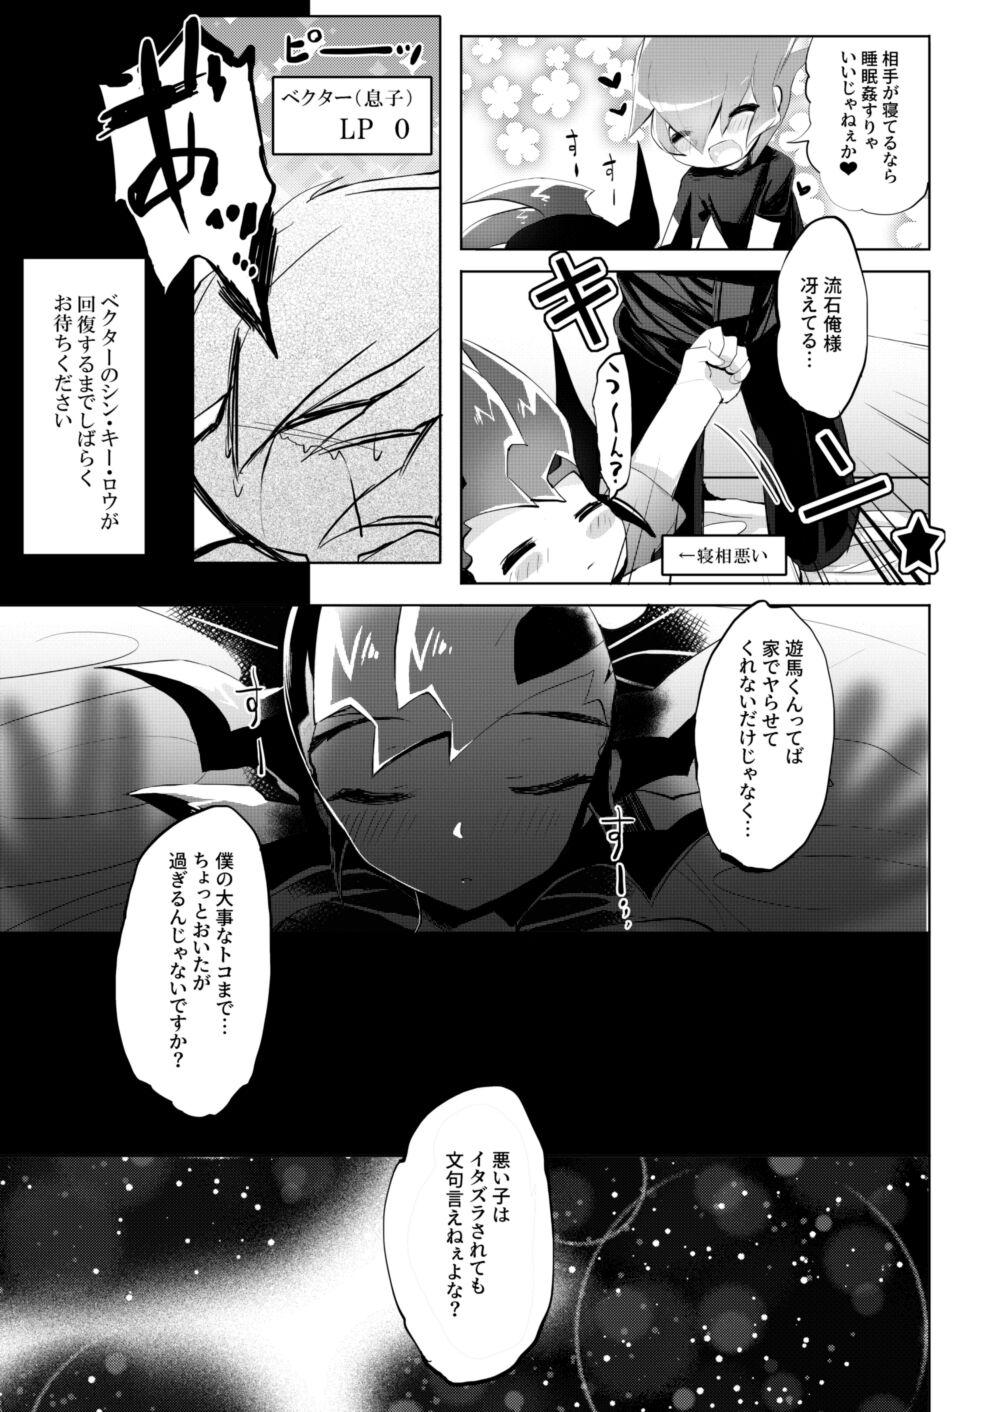 Tats Hitotsuyanenoshita no koiwazurai - Yu-gi-oh zexal Hotporn - Page 9